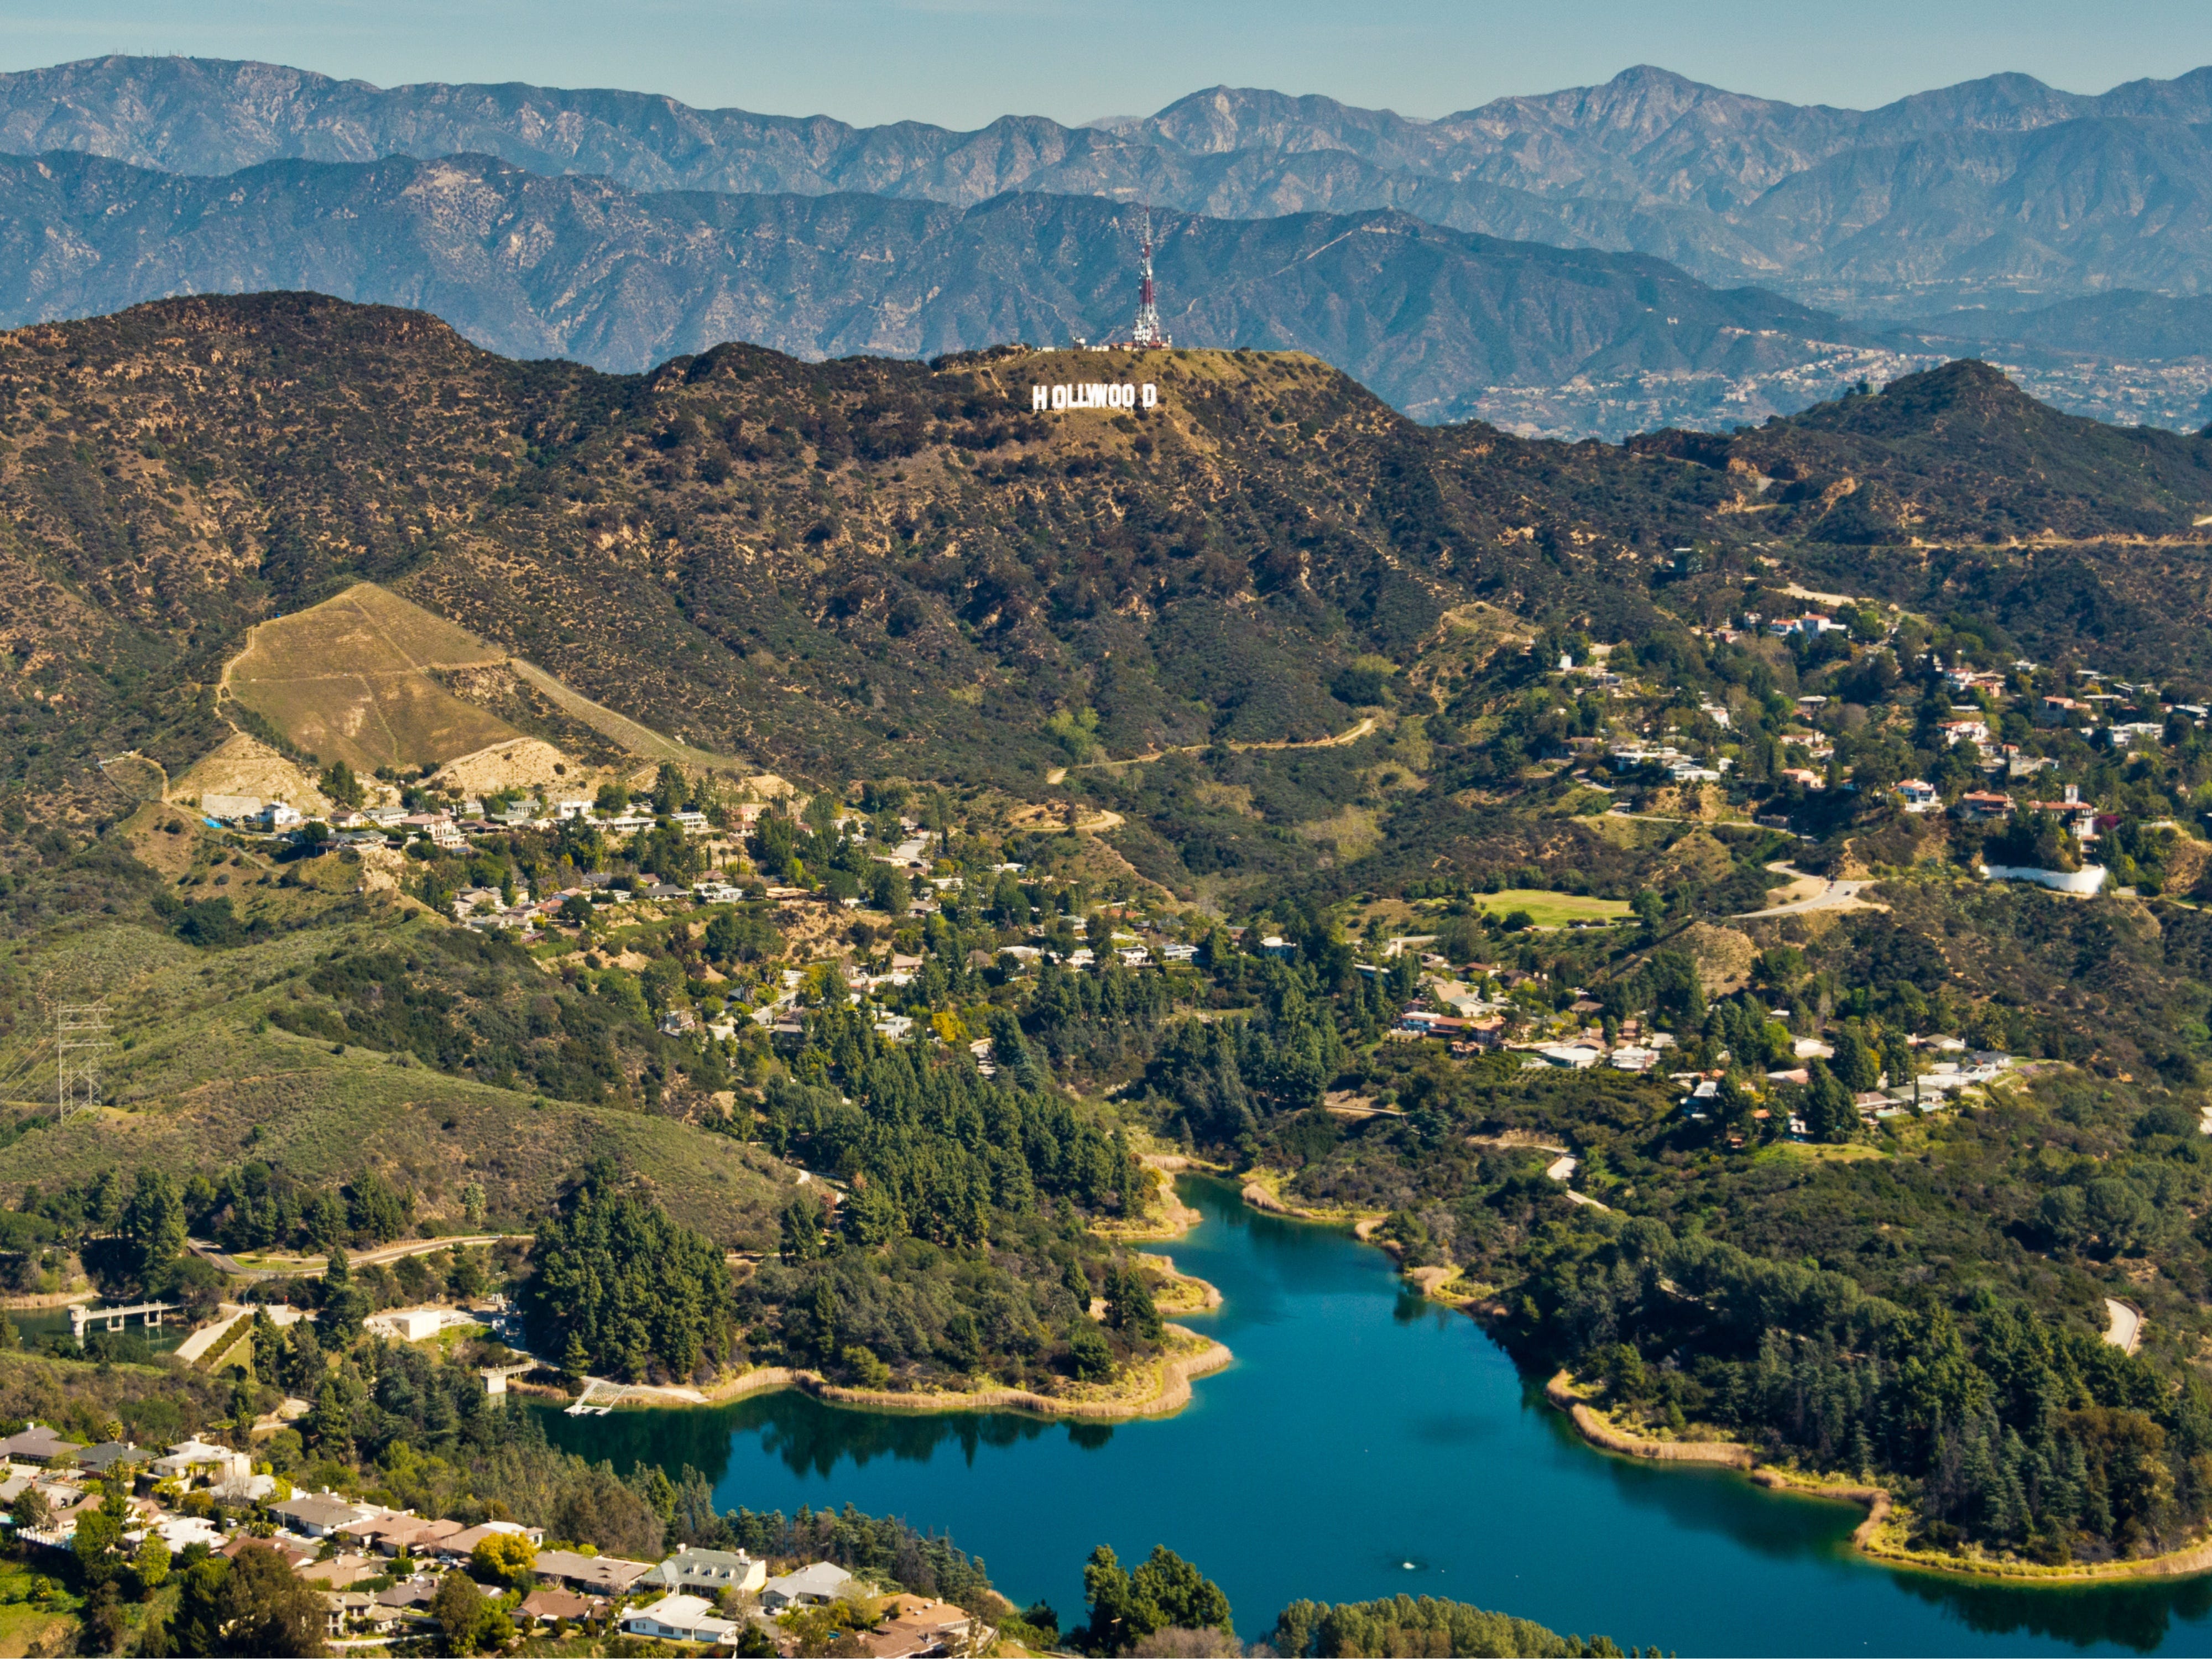 Das Hollywood Sign (früher bekannt als Hollywoodland Sign) befindet sich auf dem Mount Lee im Hollywood Hills-Gebiet der Santa Monica Mountains.  Das Schild überblickt den Hollywood-Viertel von Los Angeles.